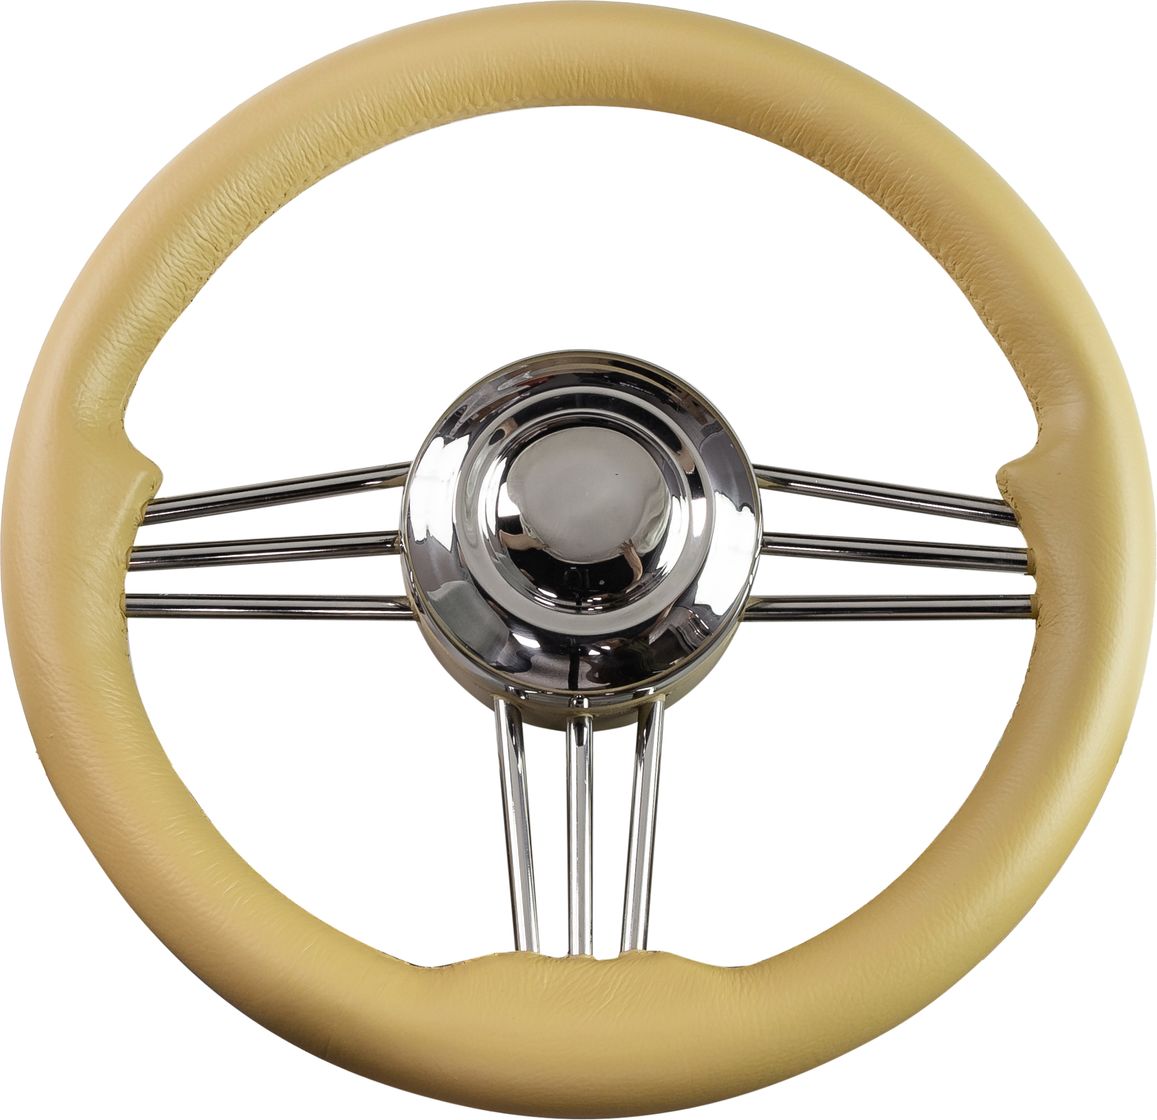 Рулевое колесо Osculati, диаметр 350 мм, цвет кремовый (имитация кожи) 45-173-36 колесо пневматическое d 360 мм ступица диаметр 16 мм длина 90 мм